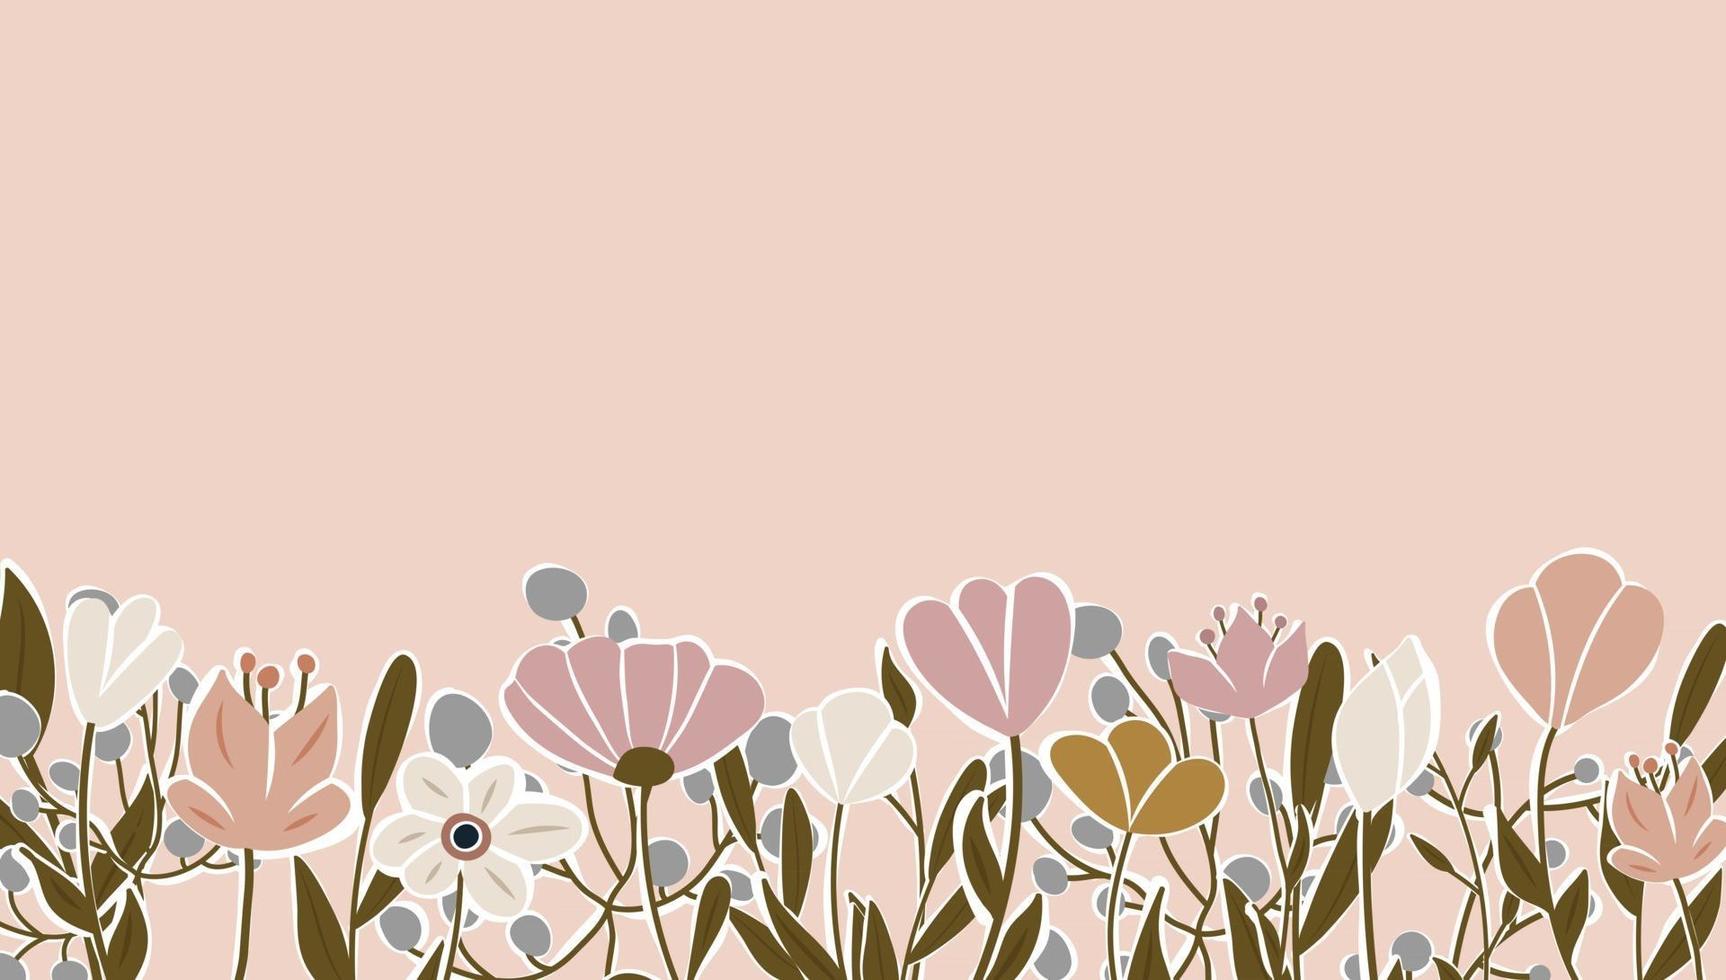 Floral Desktop Wallpaper Images - Free Download on Freepik